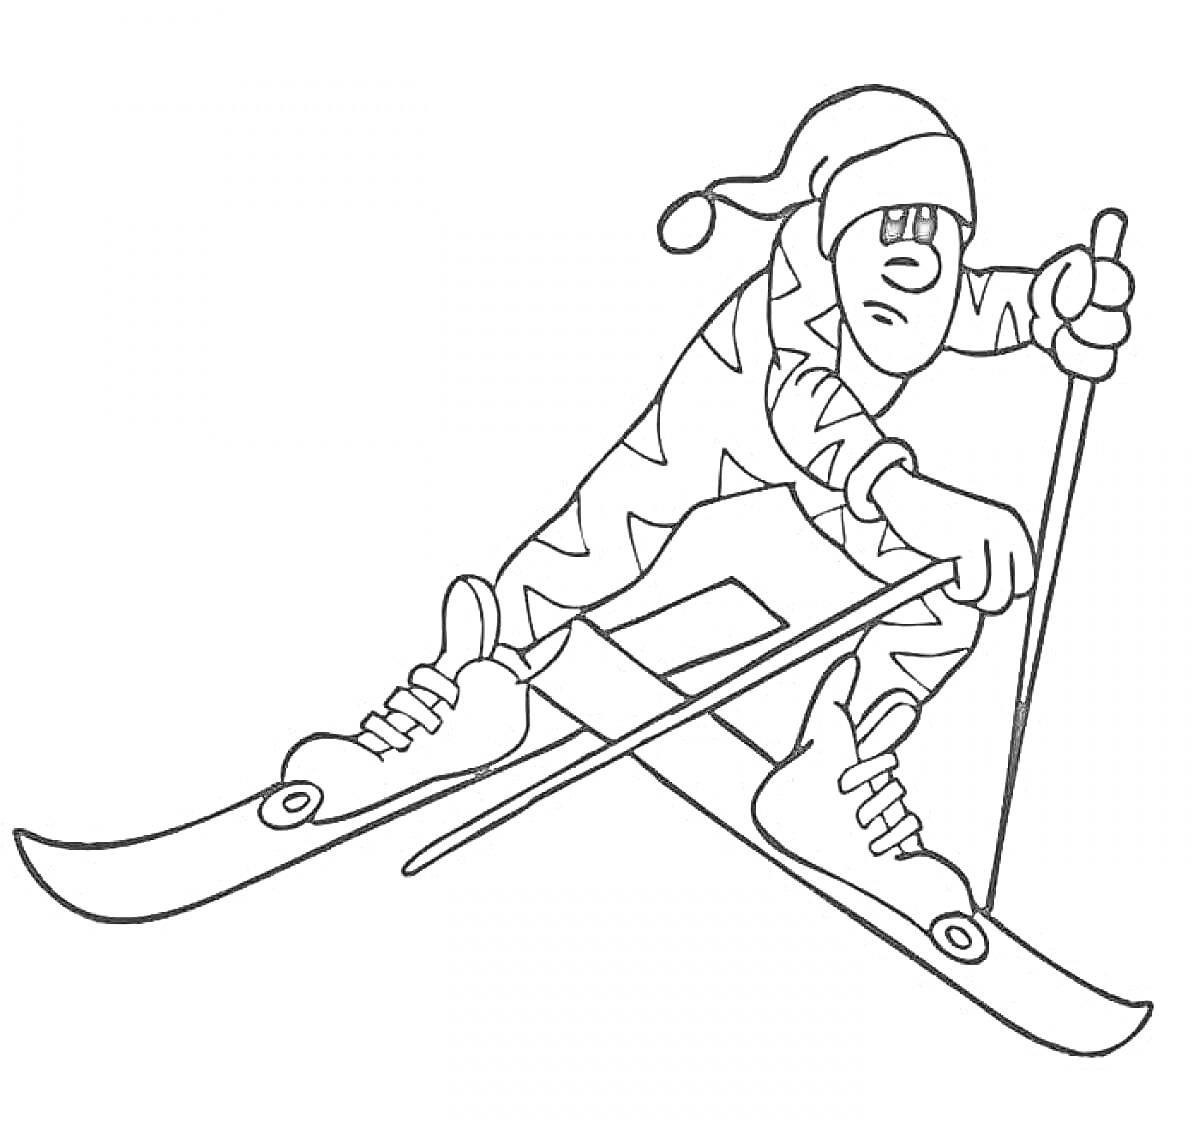 Лыжник в зимней экипировке на лыжах с лыжными палками